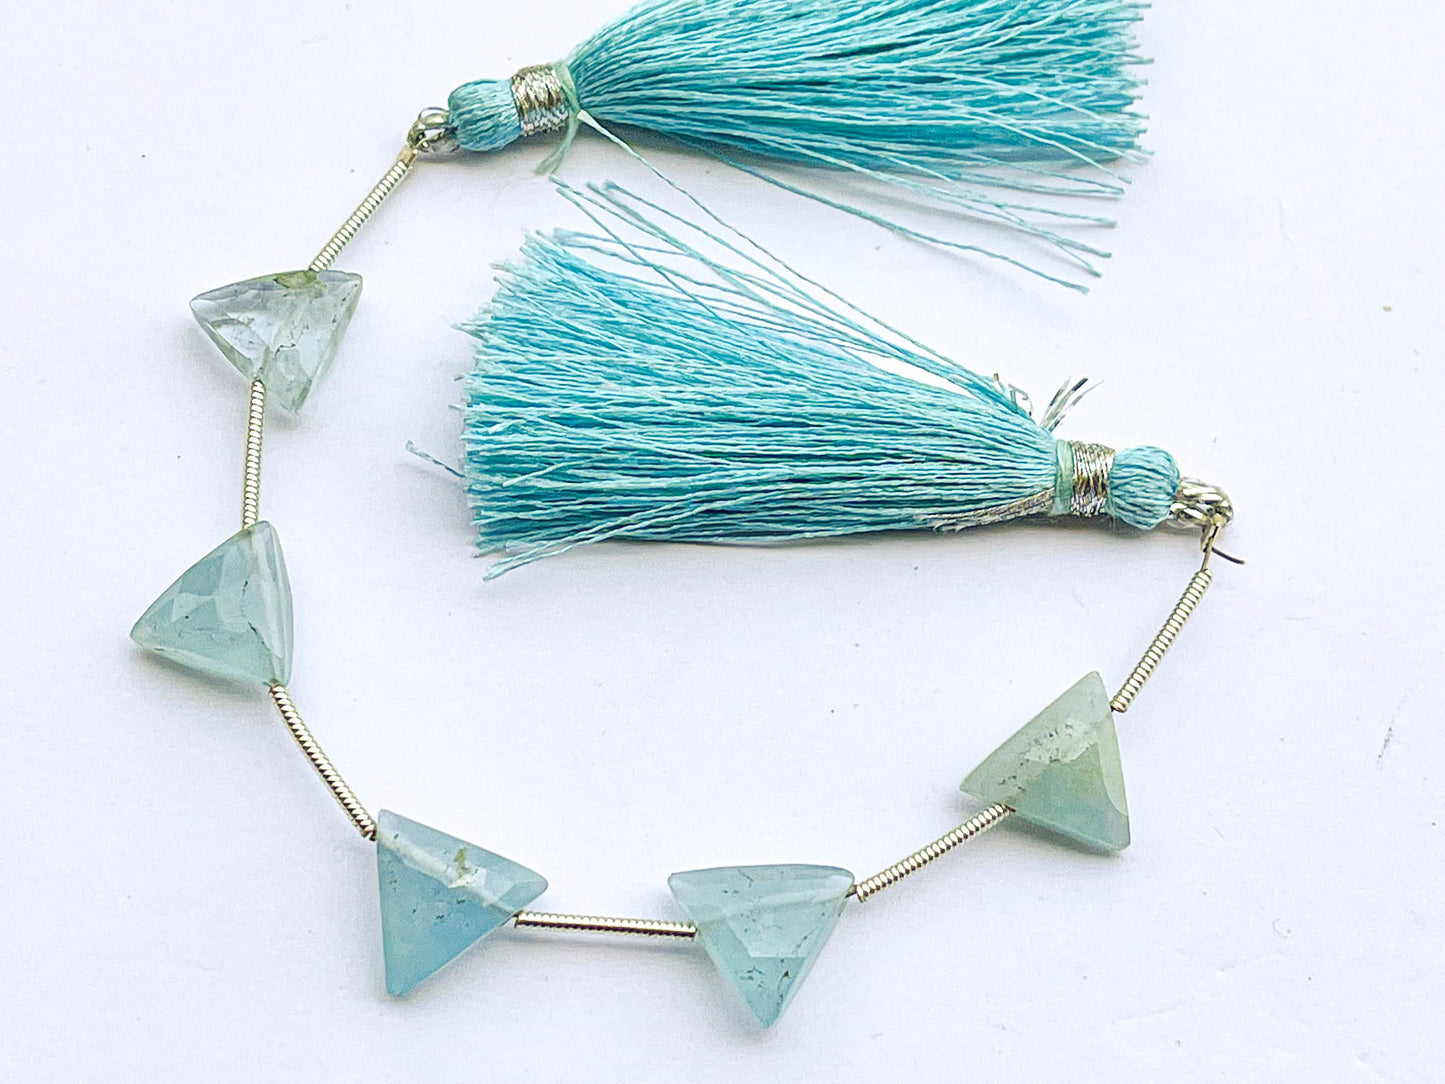 5 pieces AQUAMARINE Triangle Shape Faceted Briolette Beads, Natural Aquamarine Gemstone Beads, Aquamarine Briolette, 10x10mm